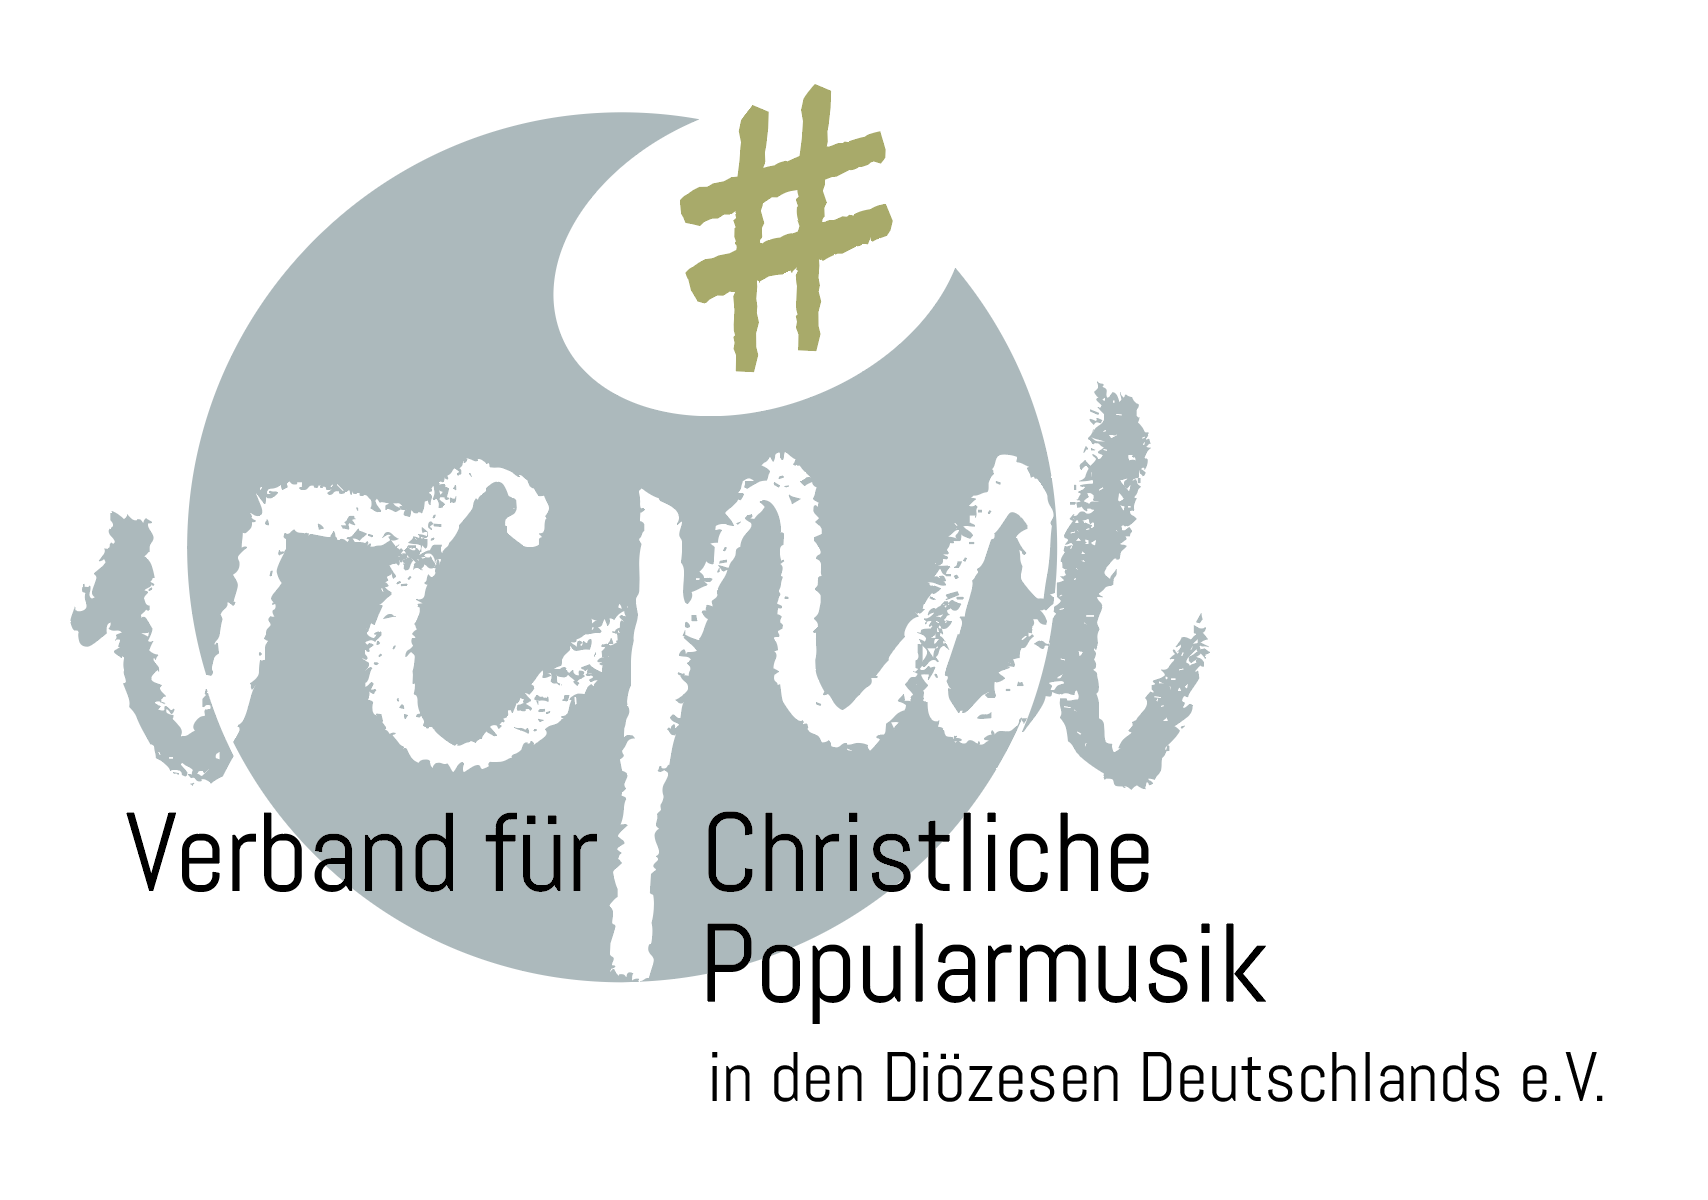 Verband für Christliche Popularmusik in den Diözesen Deutschlands e.V.